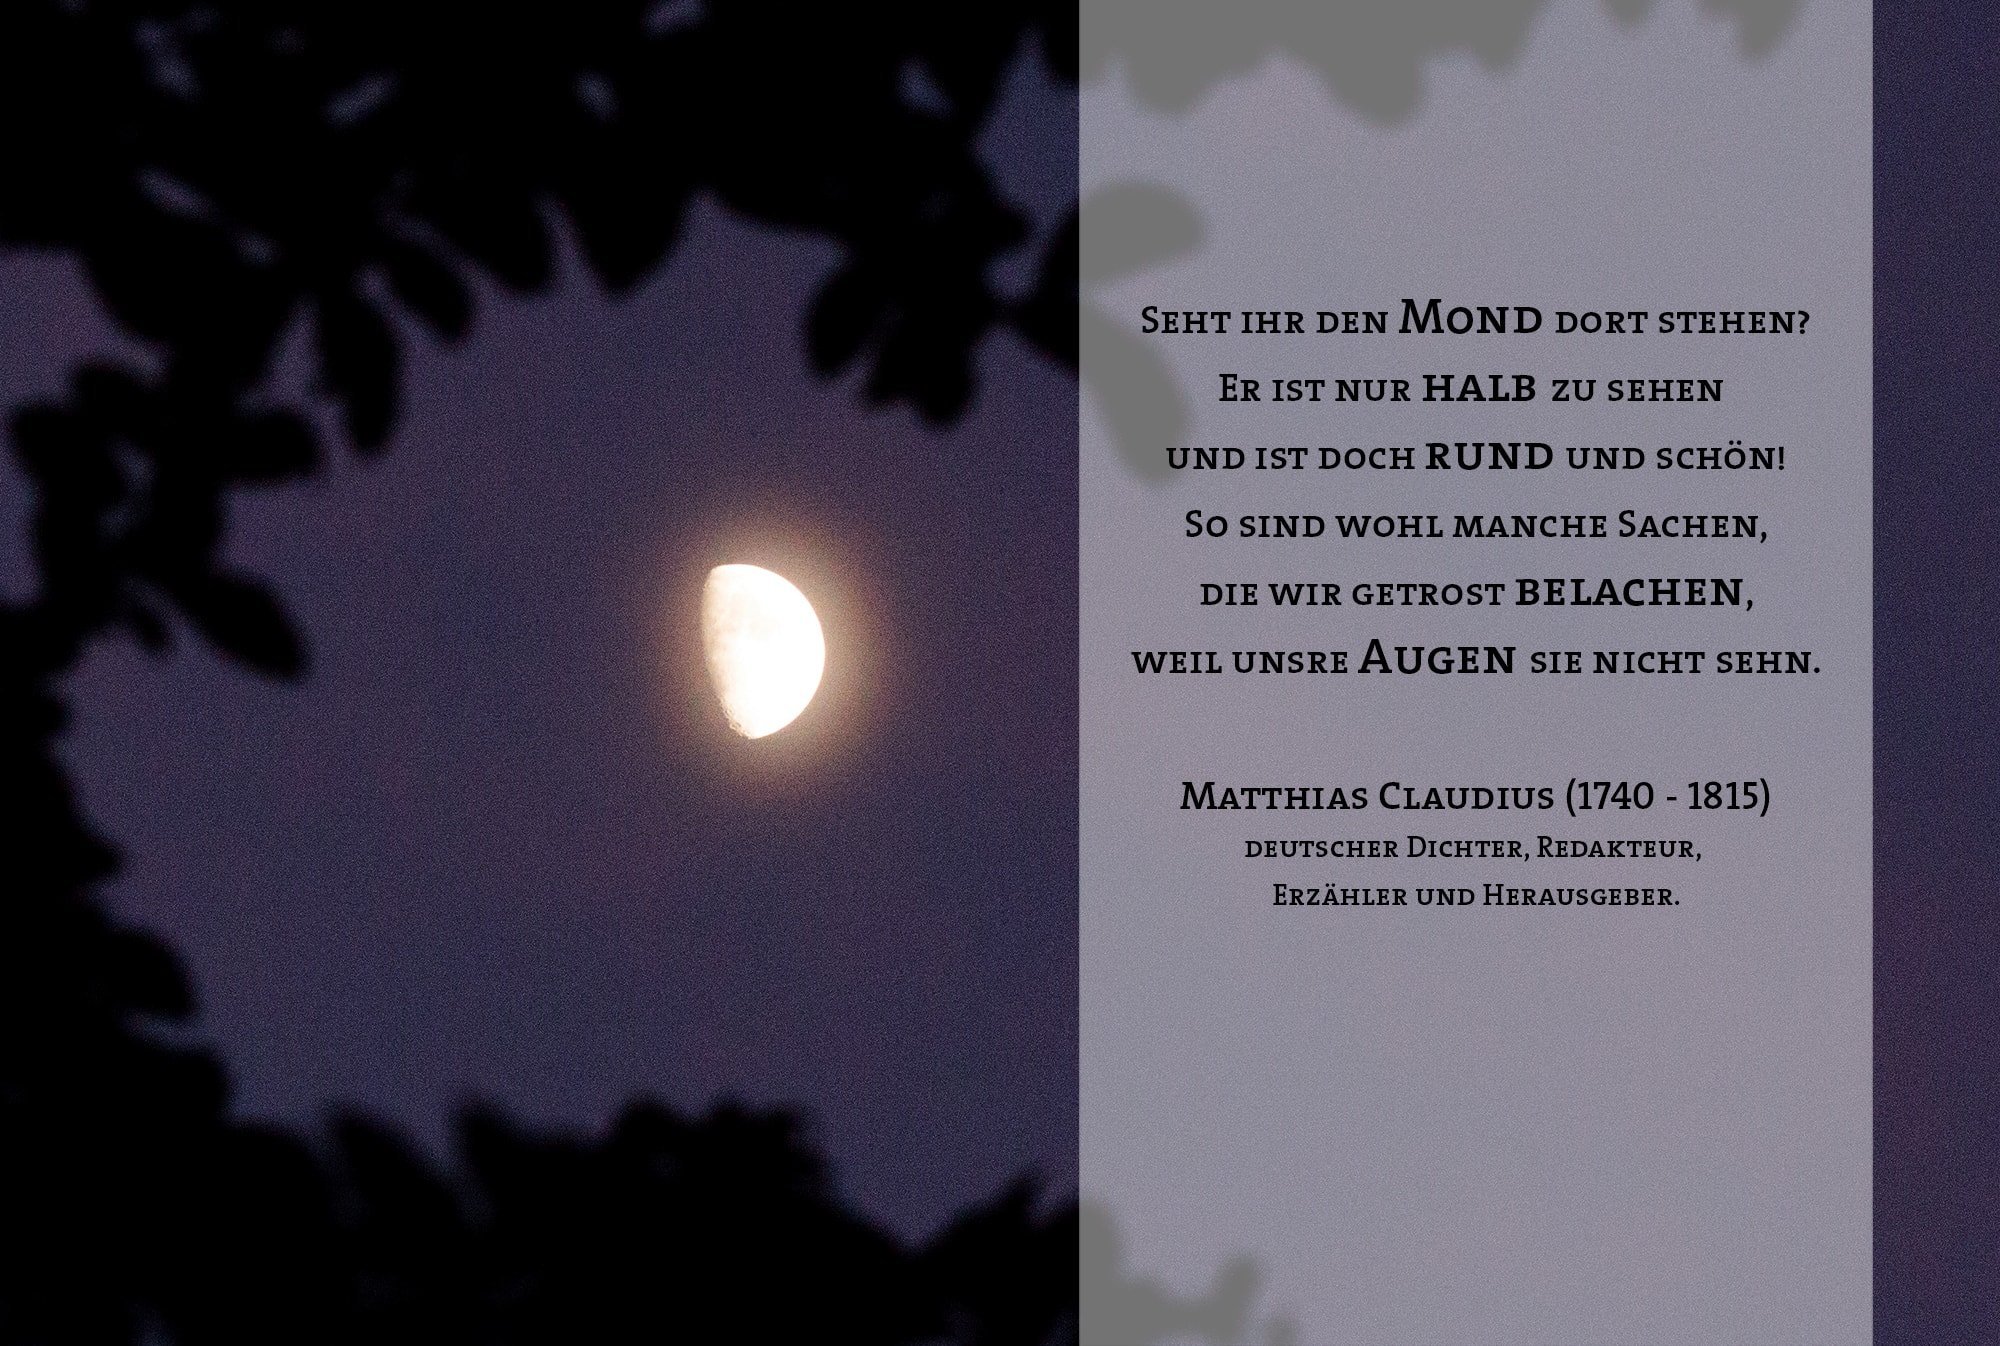 Seht ihr den Mond dort stehen? Er ist nur halb zu sehen und ist doch rund und schön! So sind wohl manche Sachen, die wir getrost belachen, weil unsre Augen sie nicht sehn. Matthias Claudius (1740 - 1815) deutscher Dichter, Redakteur, Erzähler und Herausgeber.